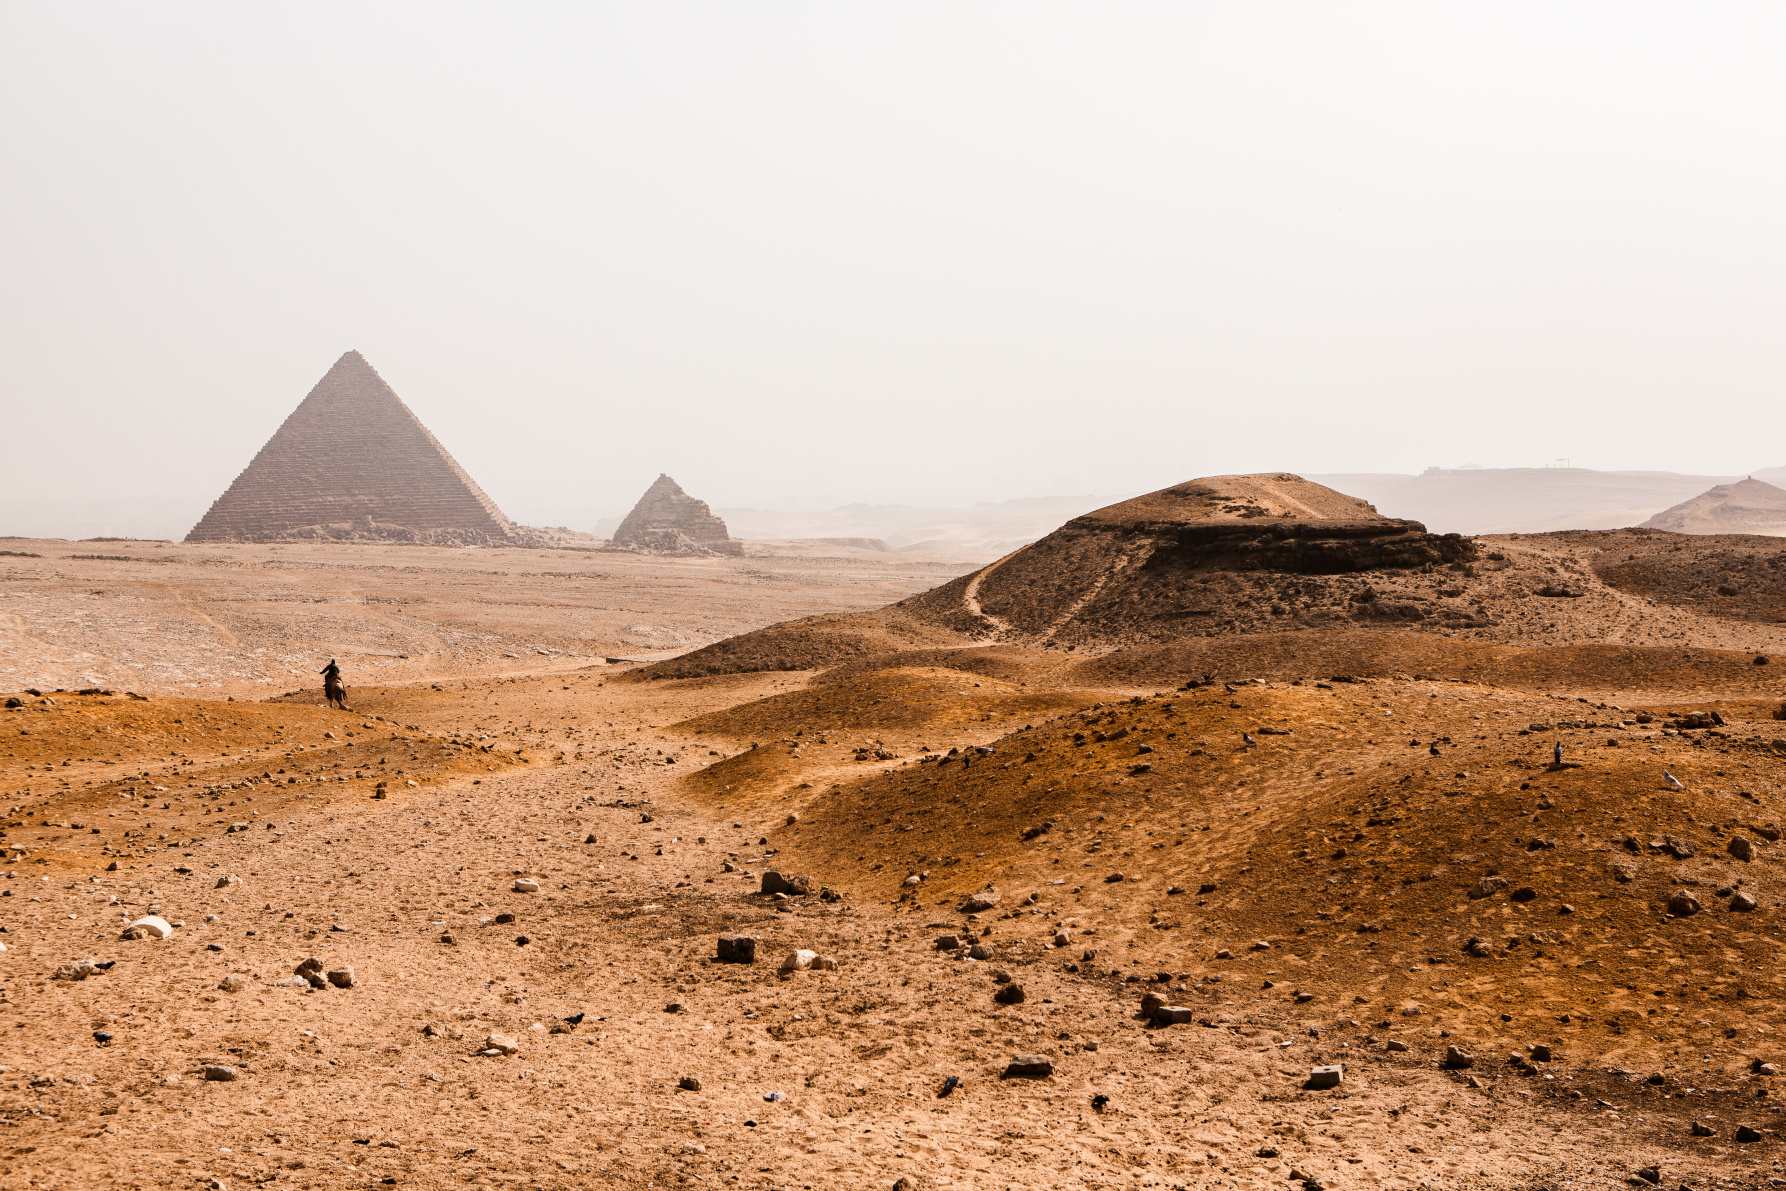 Гизадағы әйгілі Египет пирамидалары. Египеттегі пейзаж. Шөлдегі пирамида. Африка. Әлем ғажайыптары